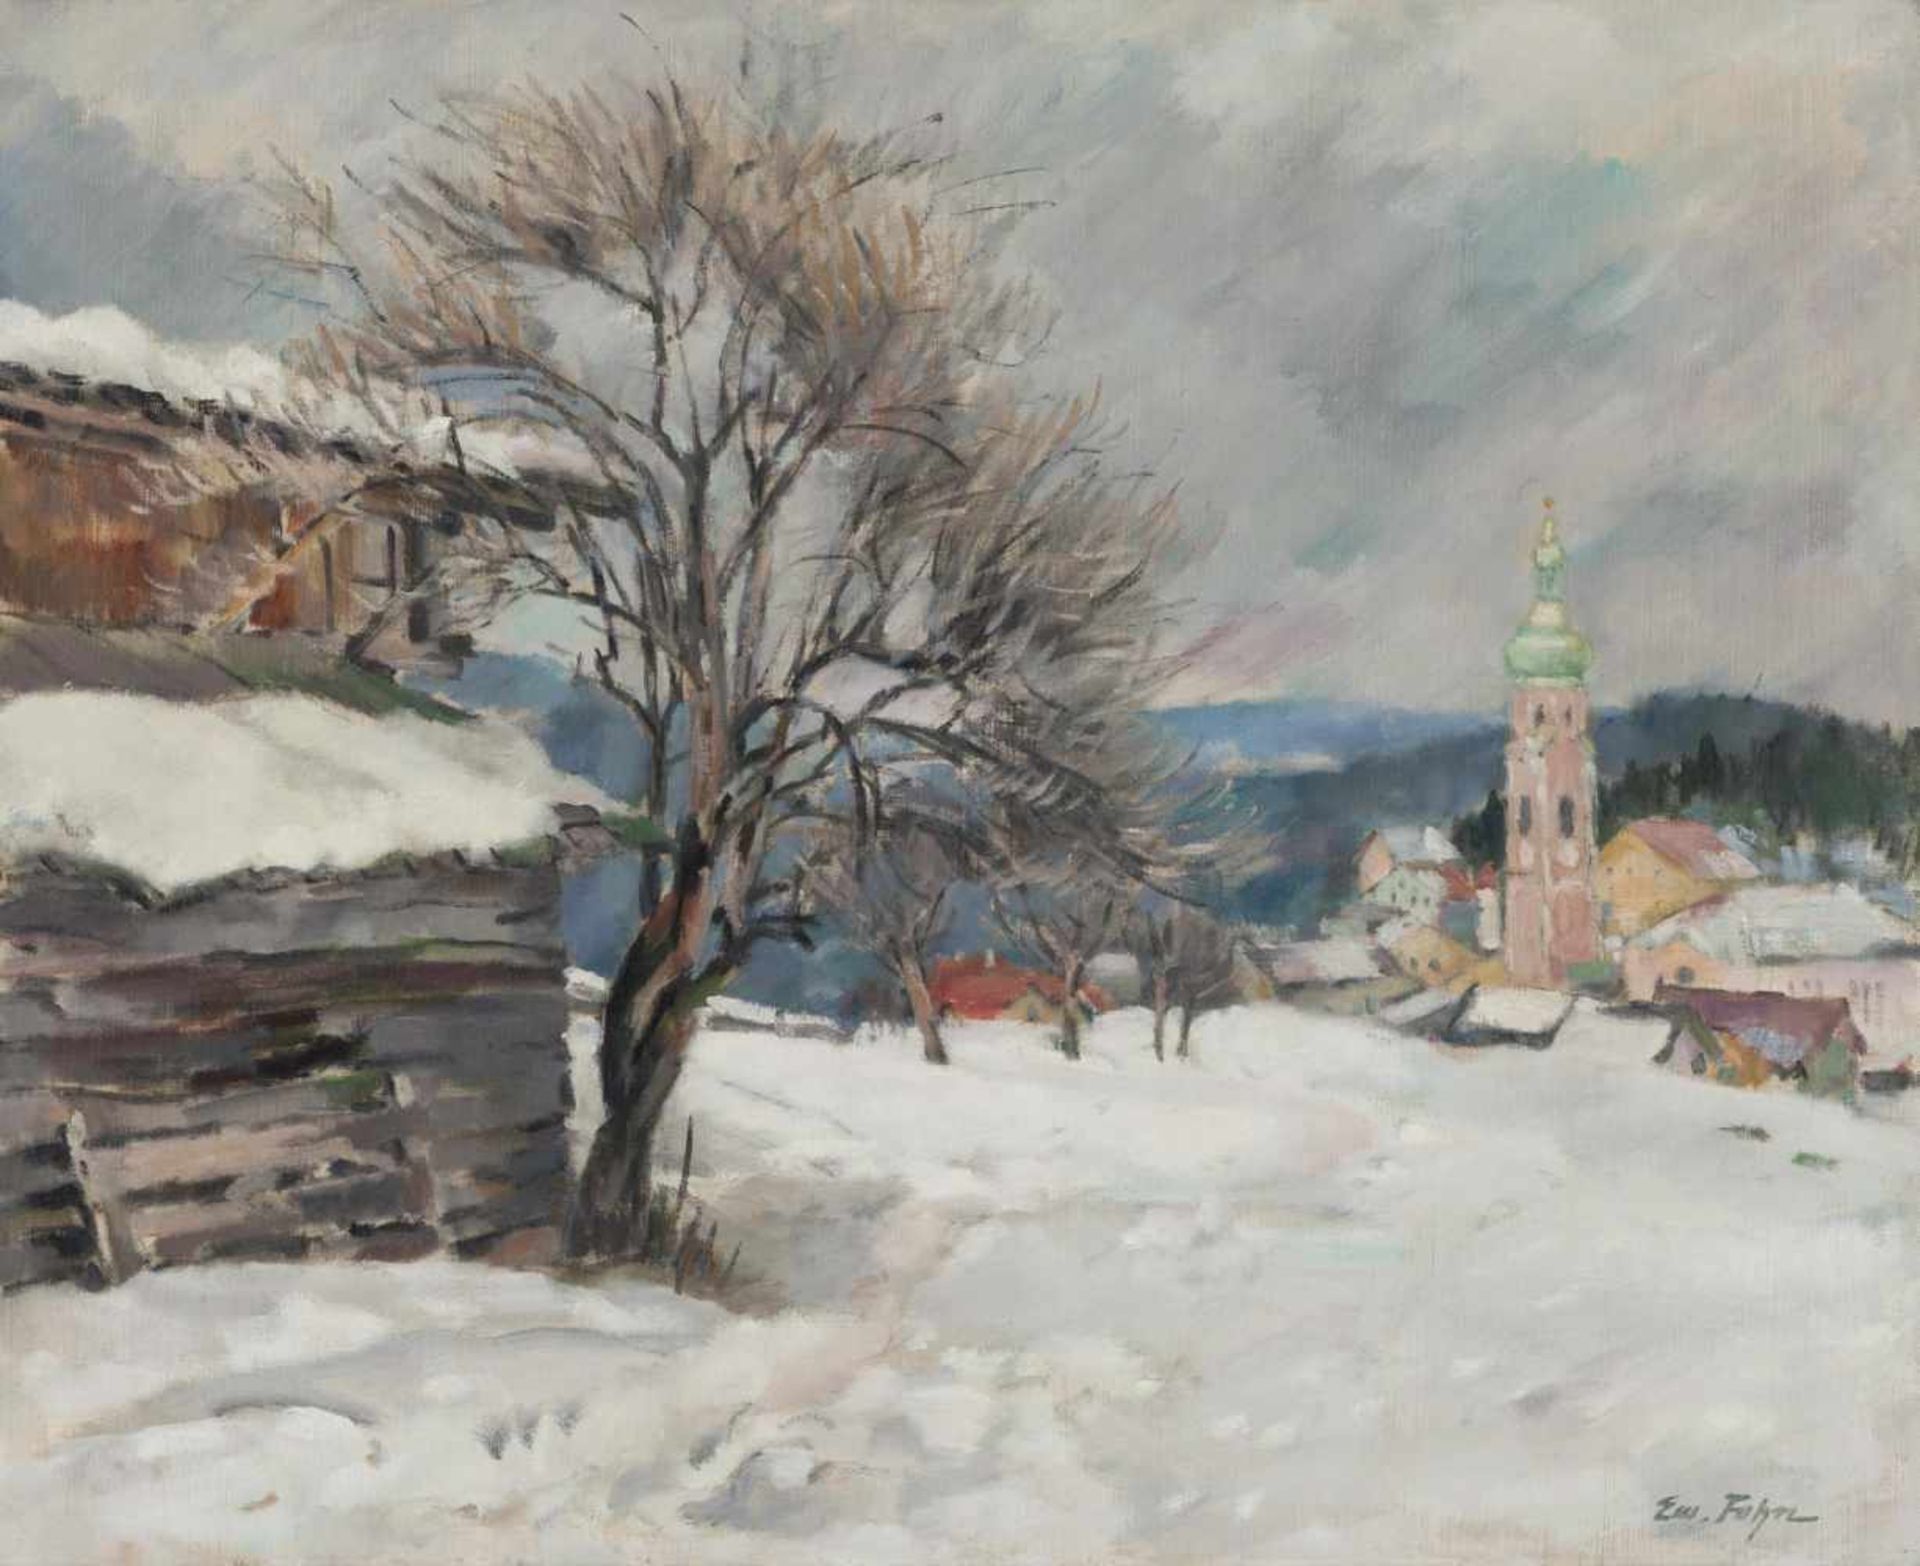 Emanuel Fohn (Wien/Vienna 1886  Bozen/Bolzano 1939)Kastelruth im Winter;Ölgemälde, 58 x 71,5 cm